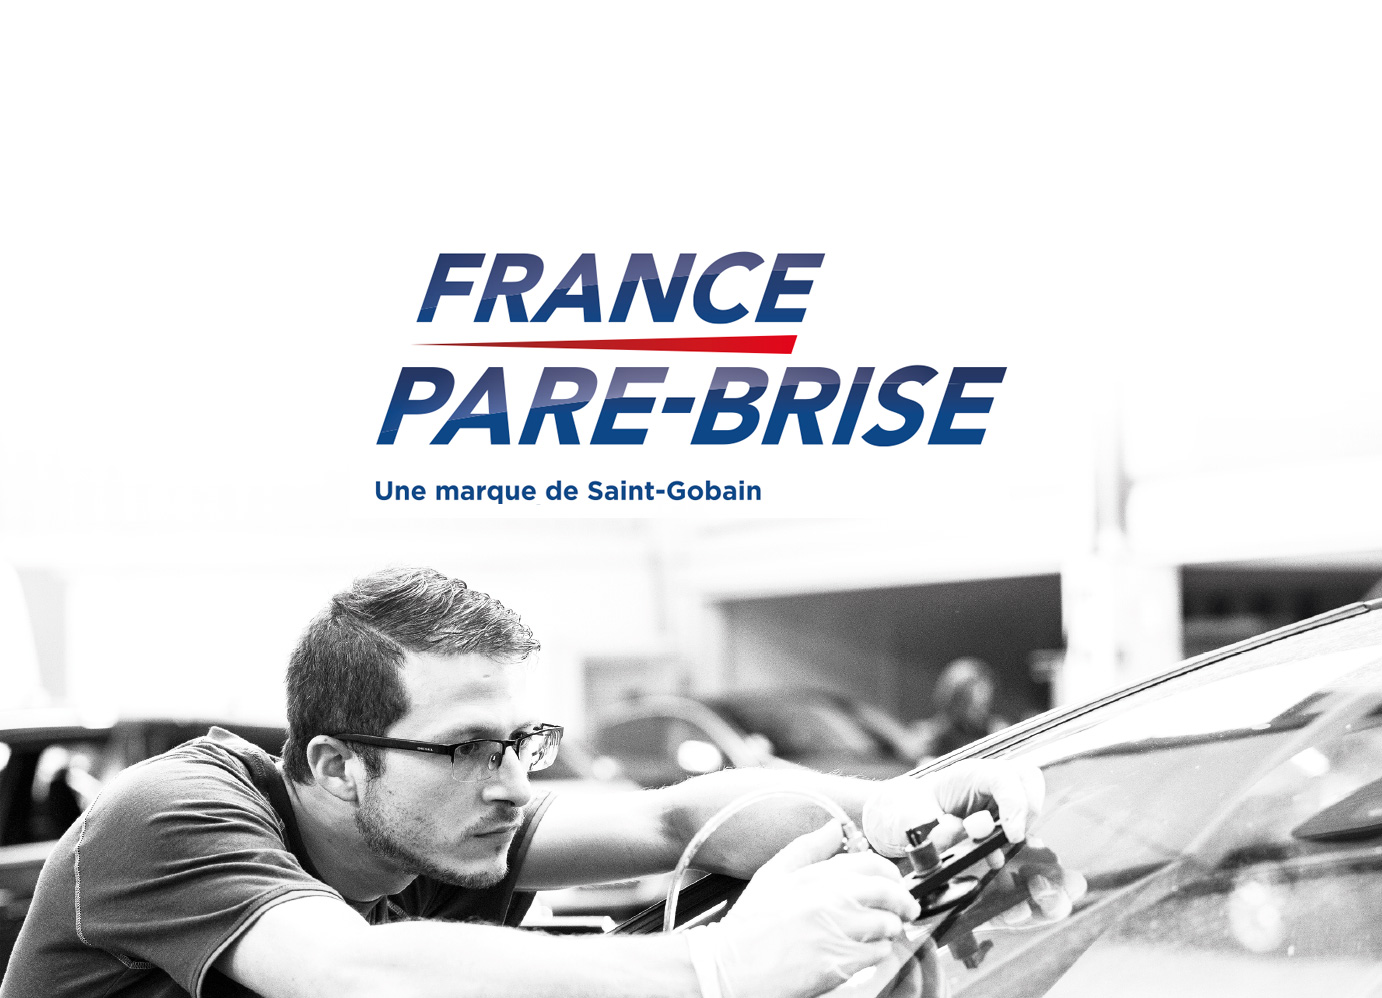 Pare-brise automobile - Mike Services France